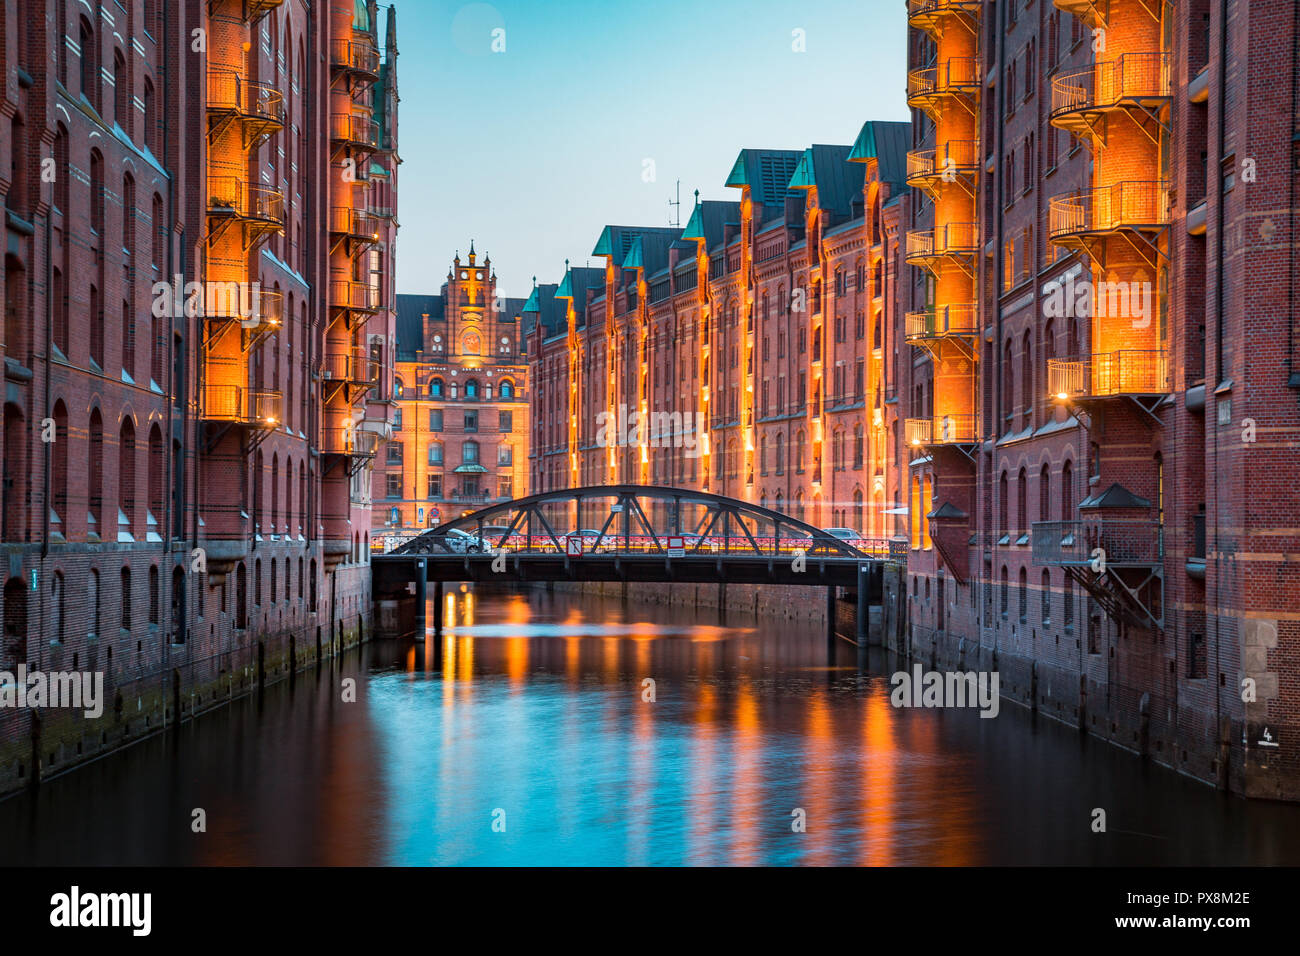 Vista clásica del famoso distrito de almacenes Speicherstadt, un sitio del Patrimonio Mundial de la UNESCO desde 2015, iluminada en el crepúsculo del atardecer hermoso post en dus Foto de stock